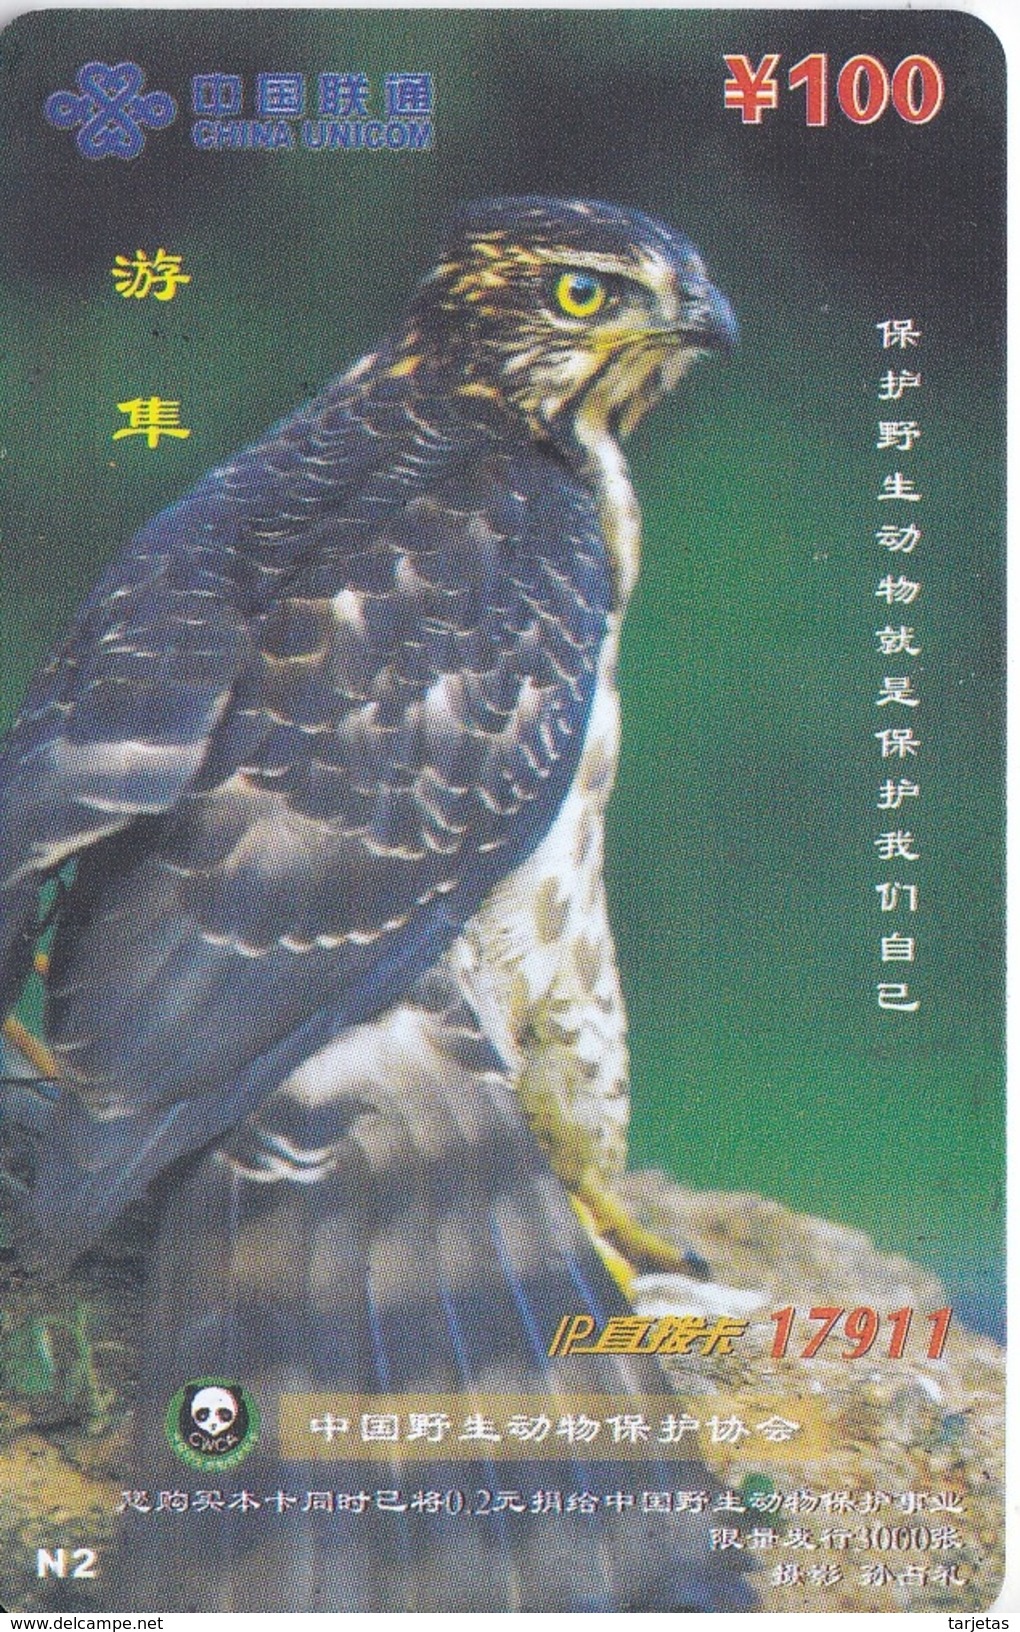 TARJETA DE CHINA DE UN AGUILA (EAGLE) - Arenden & Roofvogels